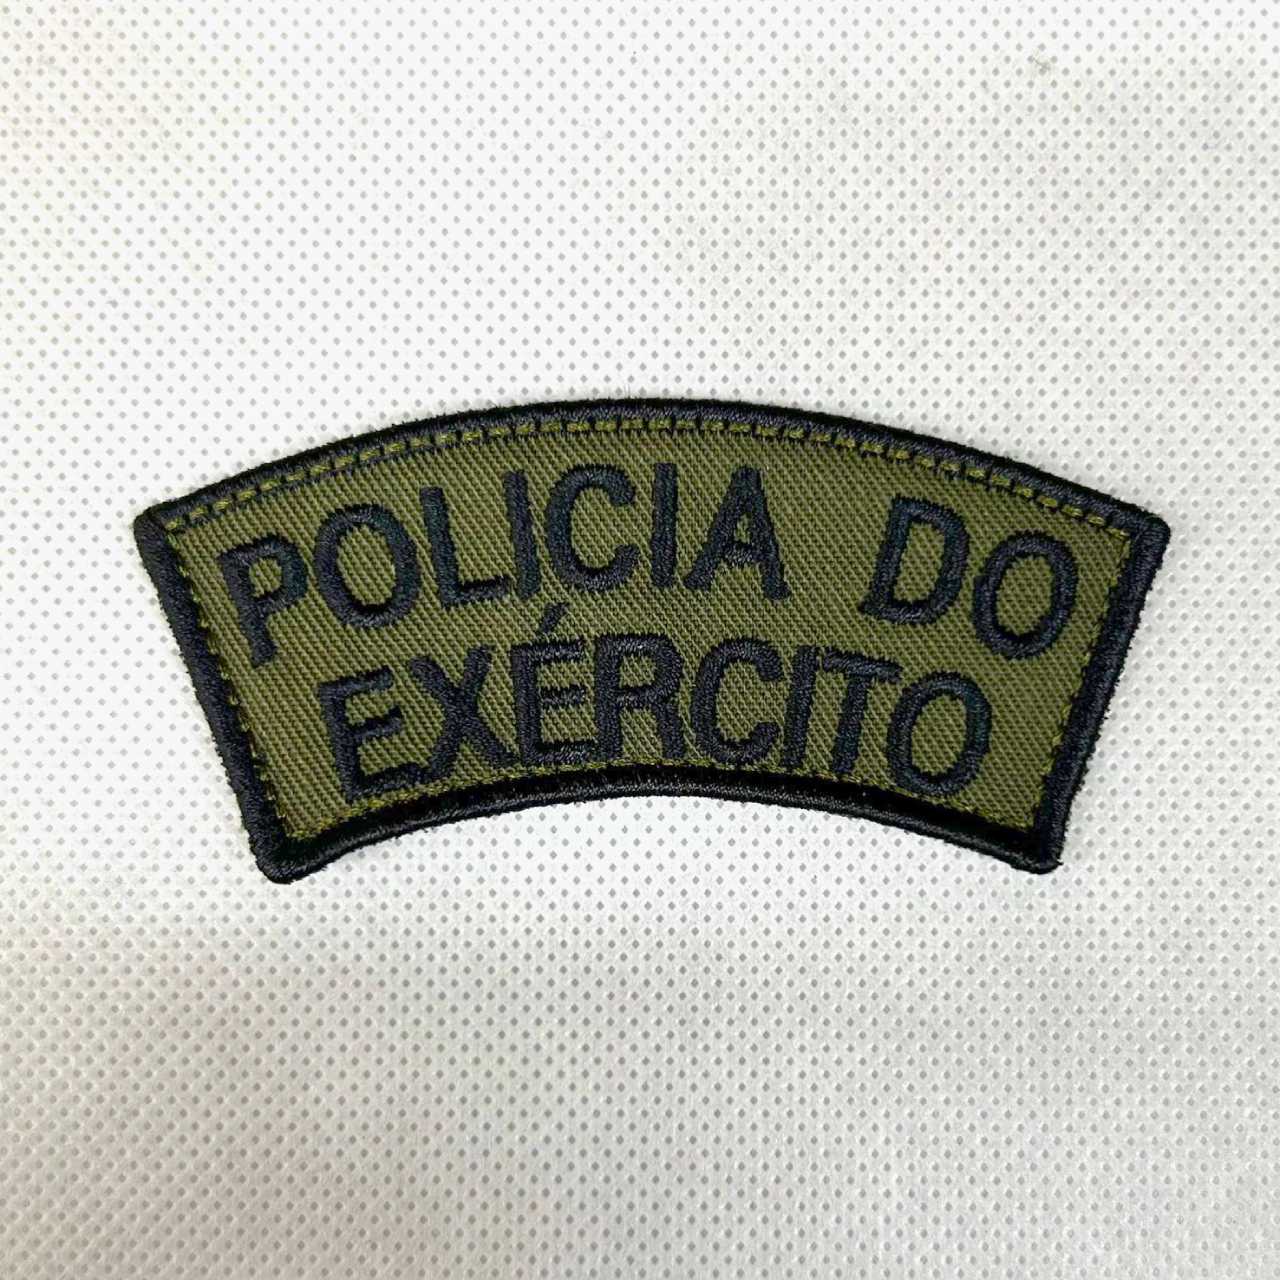 Patch meia-lua Policia do Exercito - PE